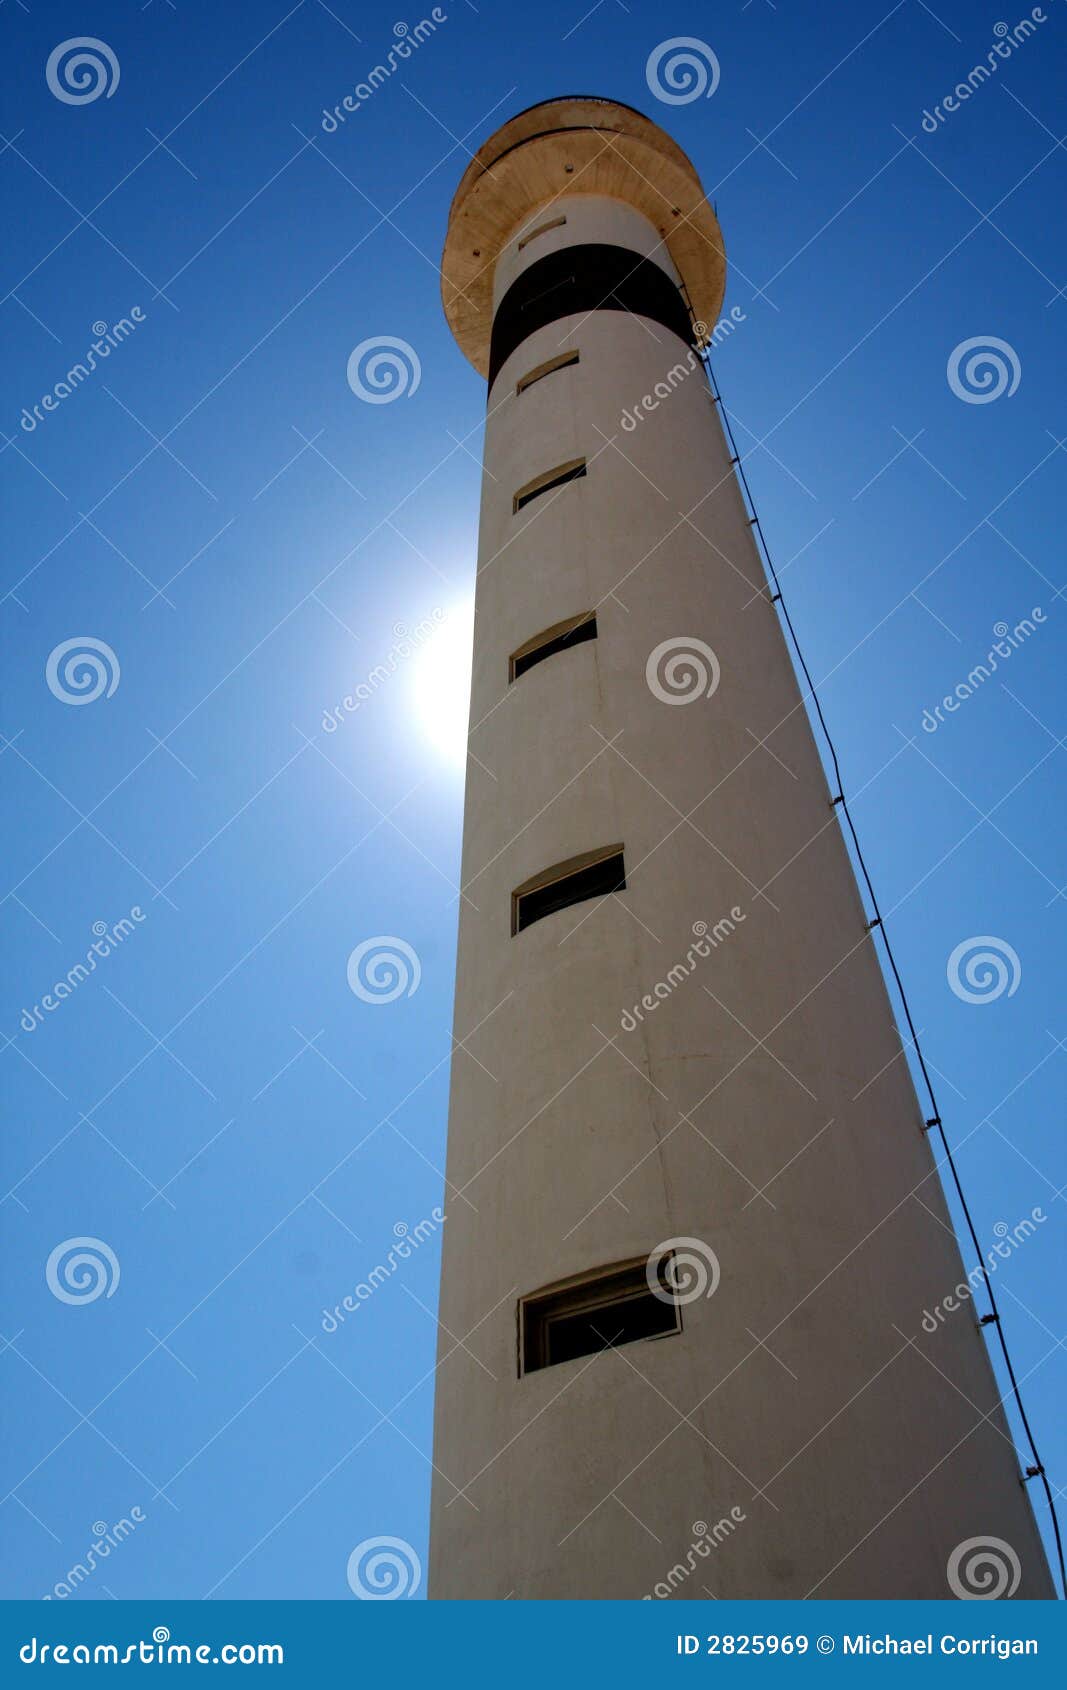 lighthouse - rota, spain